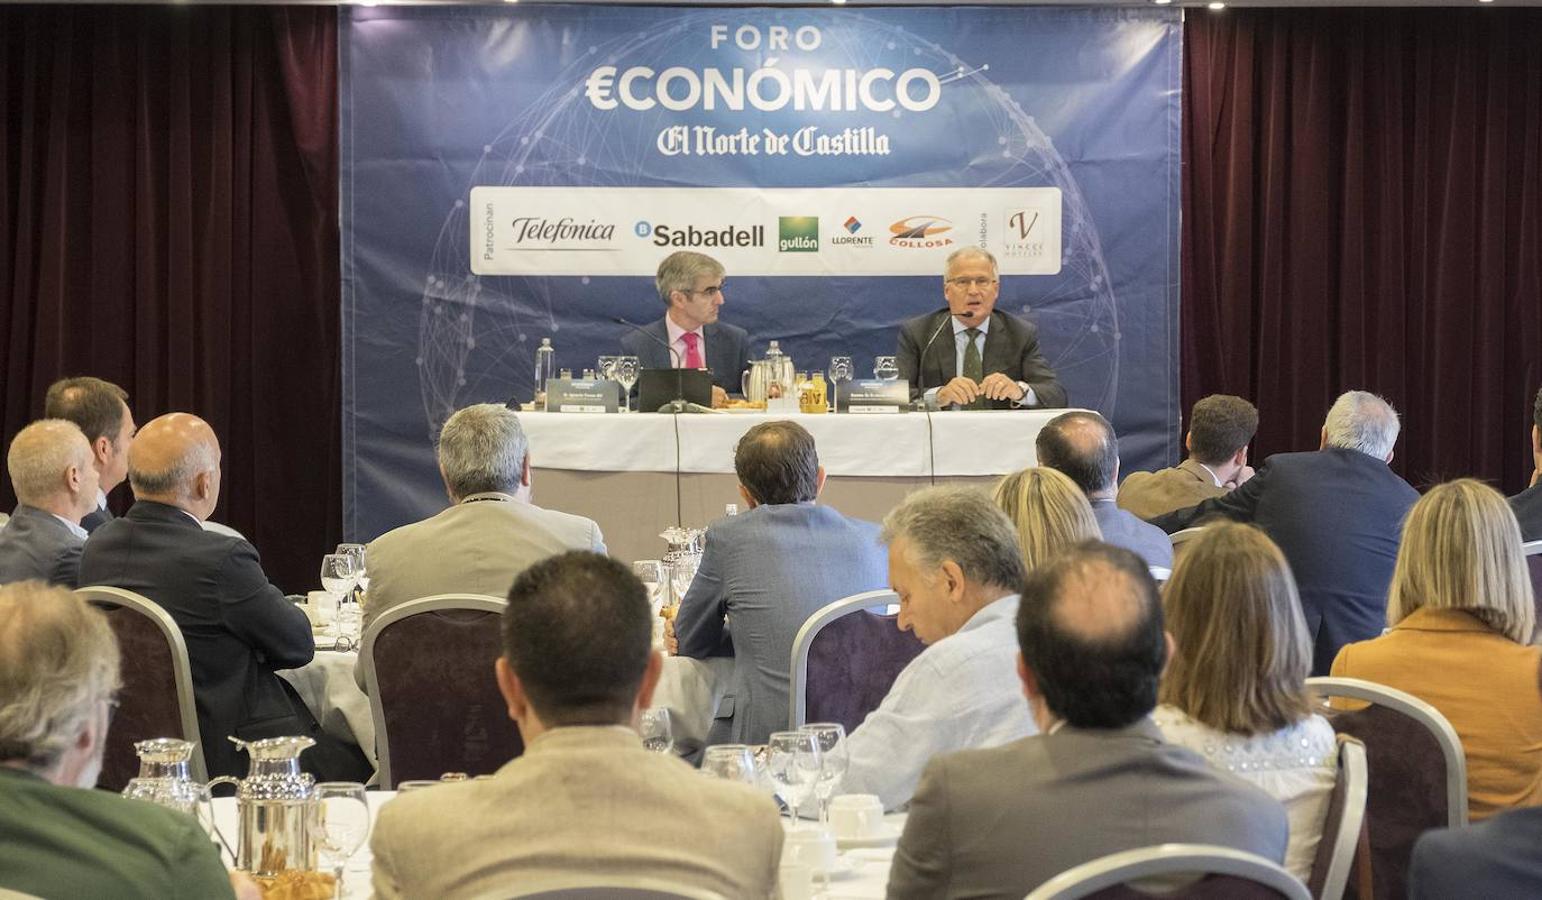 Fotos: Foro Económico de El Norte de Castilla con Josep Bou